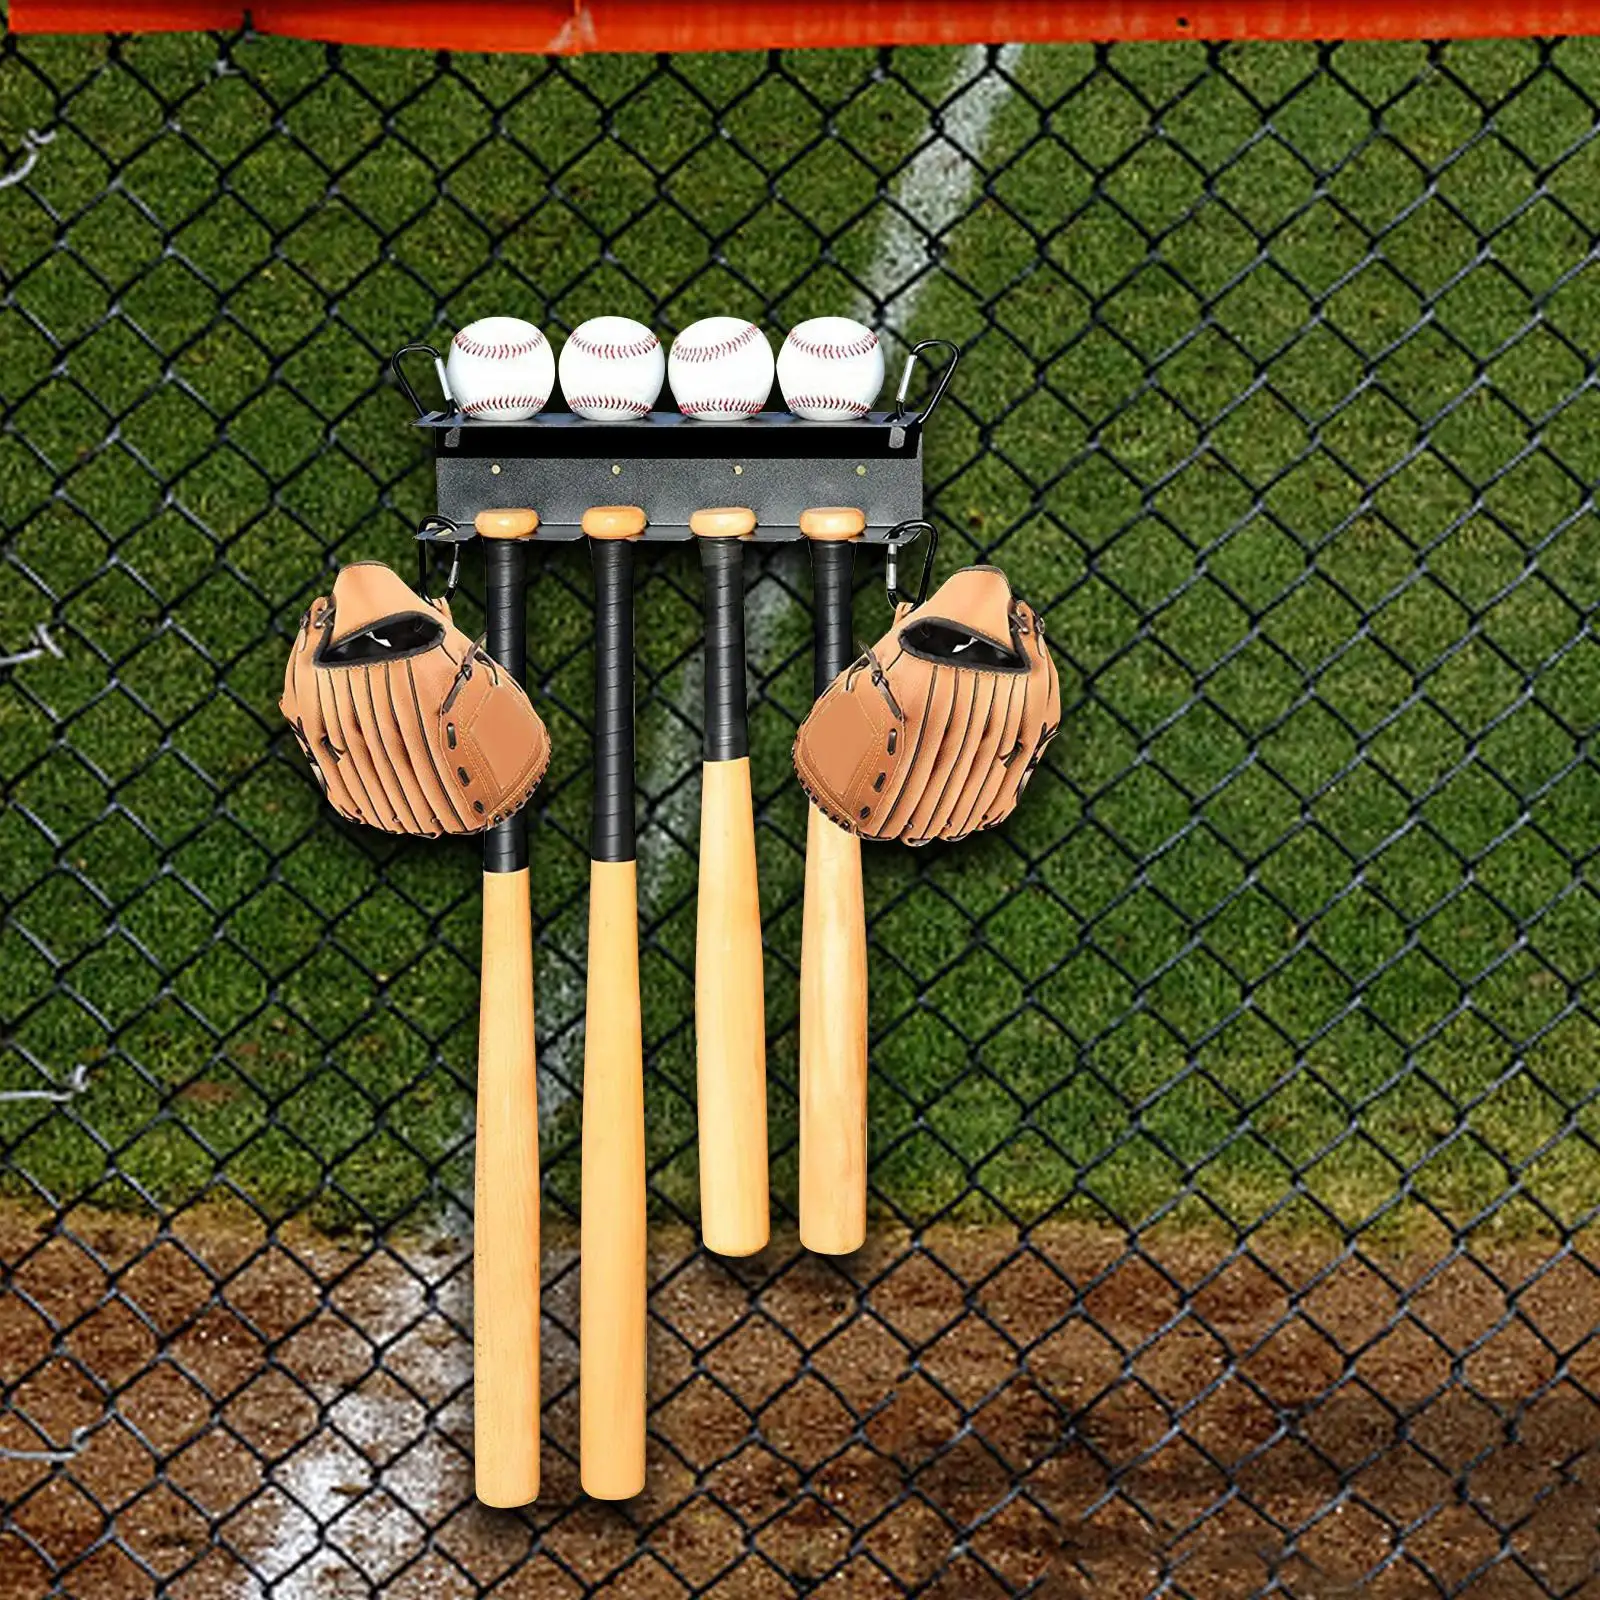 Baseball Bats Shelf Ball Rack Organizer Hold 4 Bats 4 Balls Display Hanger for Sports